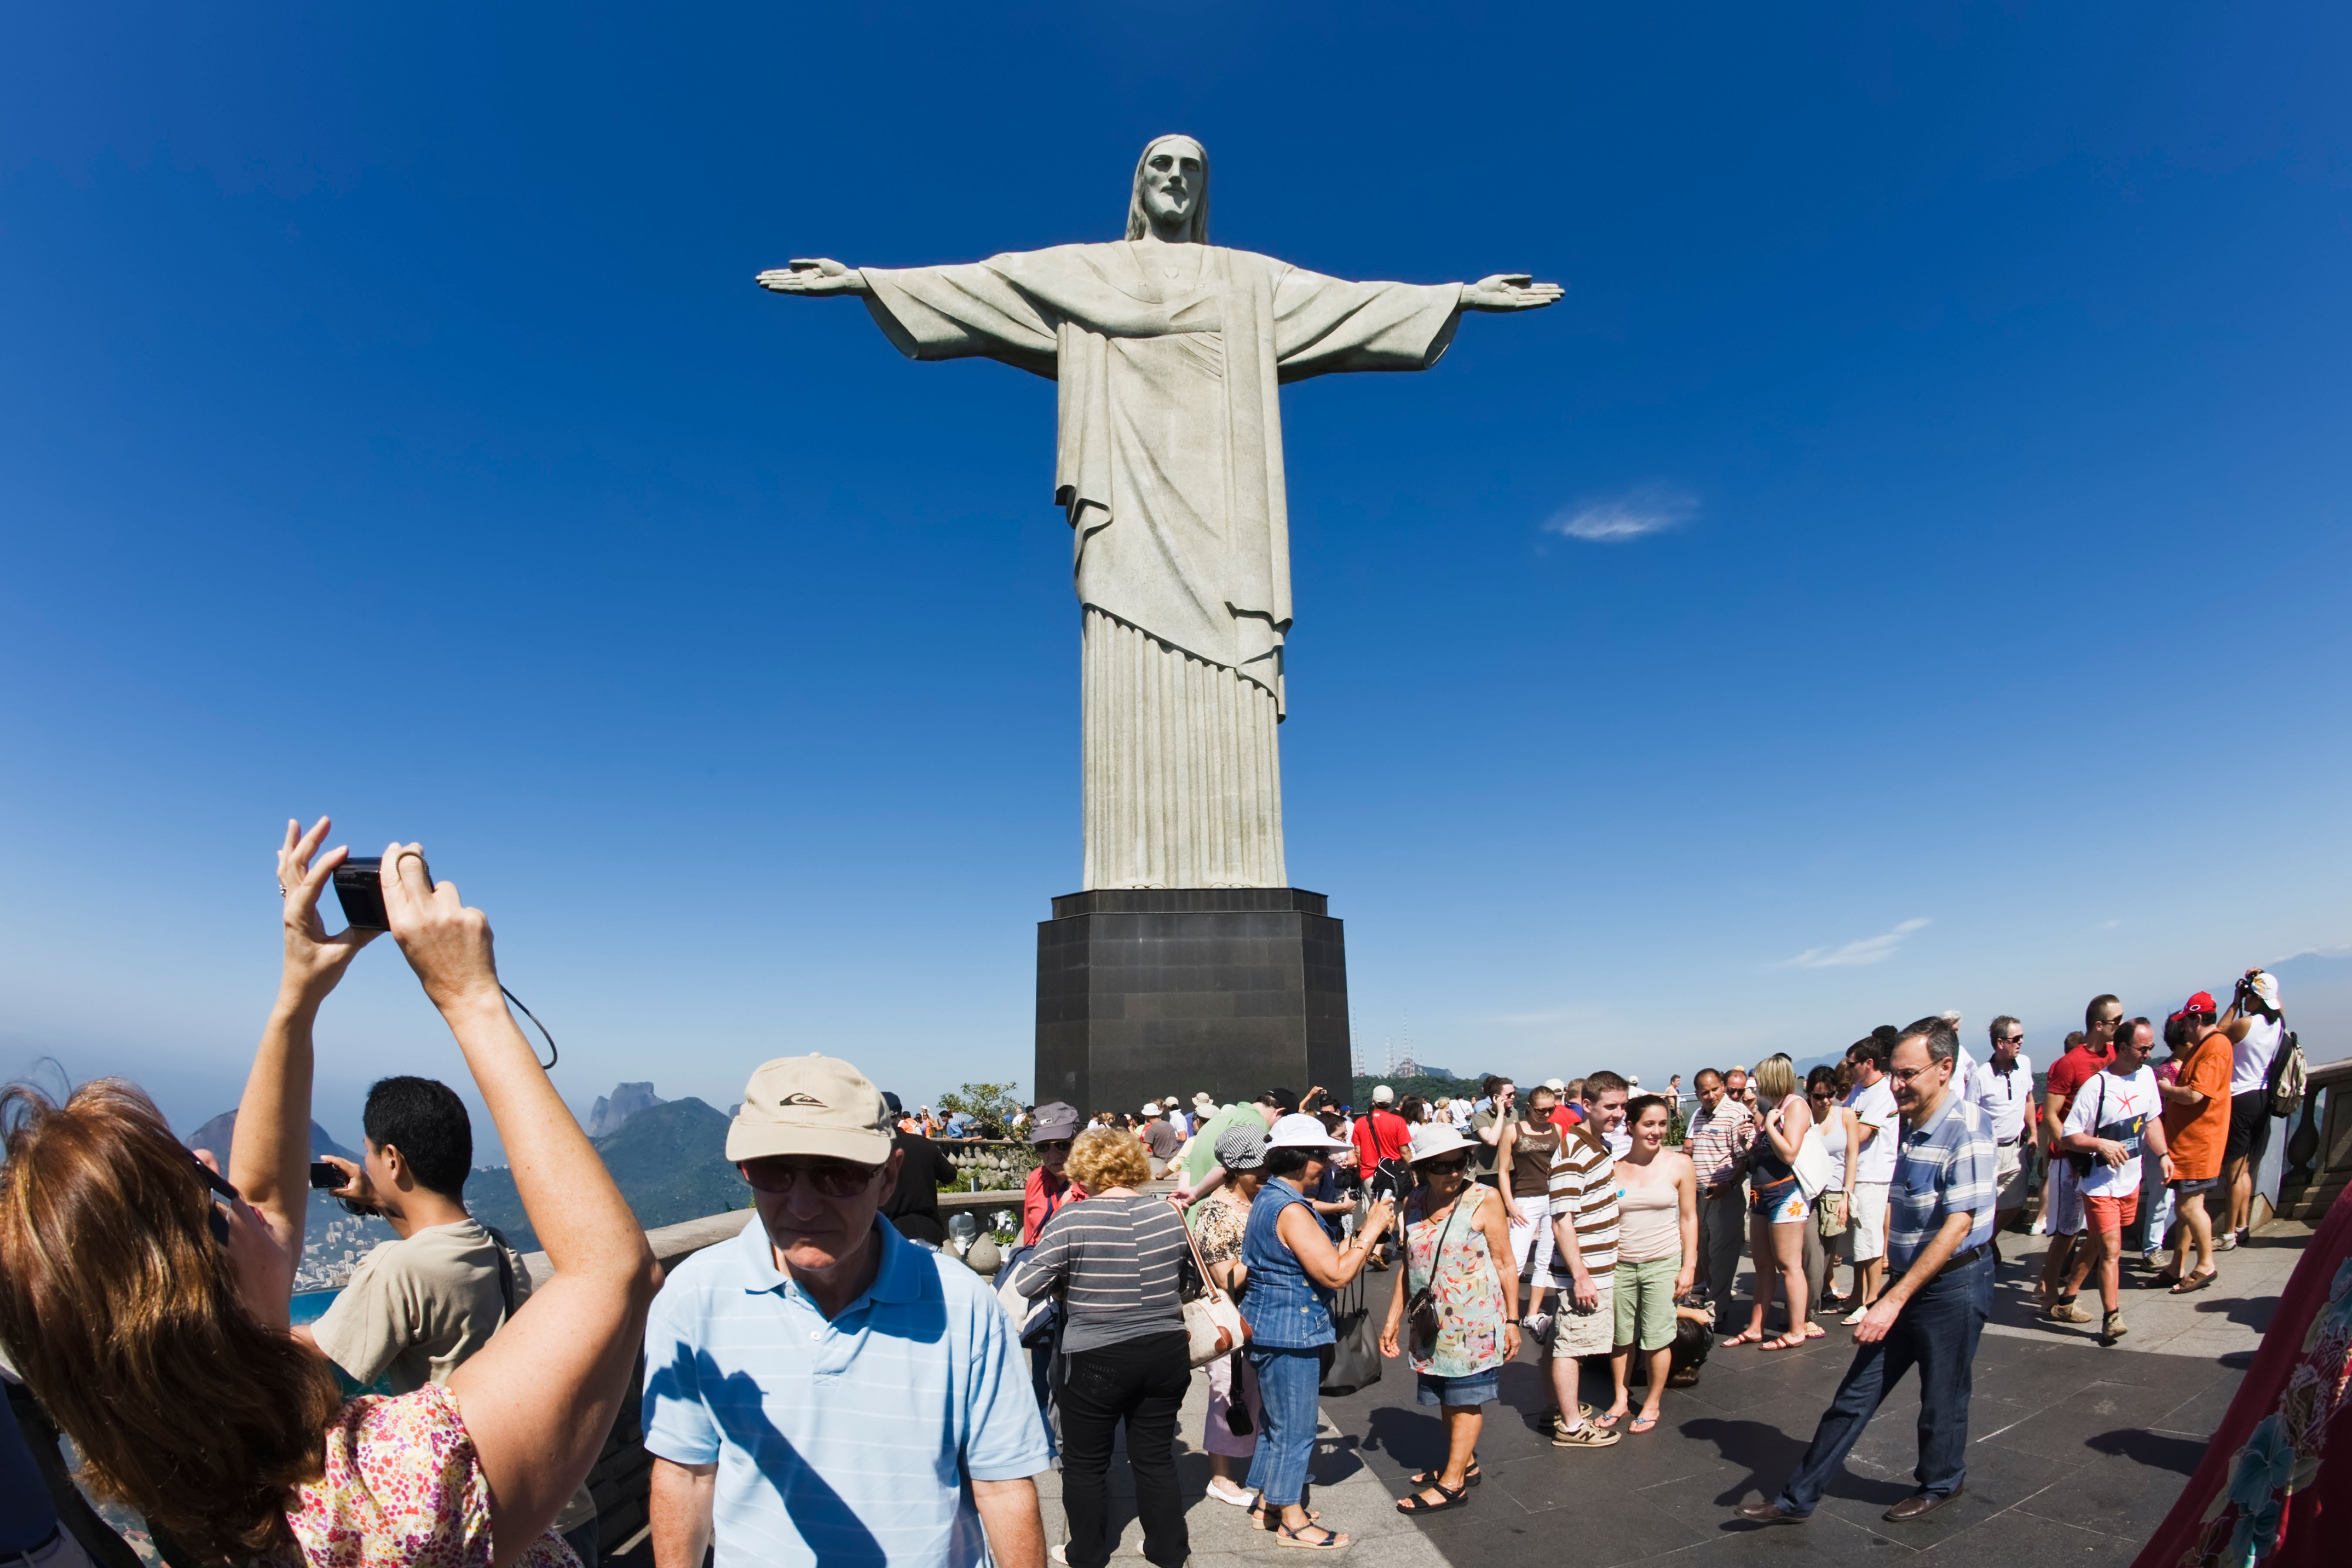  Hibridismos en el campo religioso brasileño: una mirada antropológica